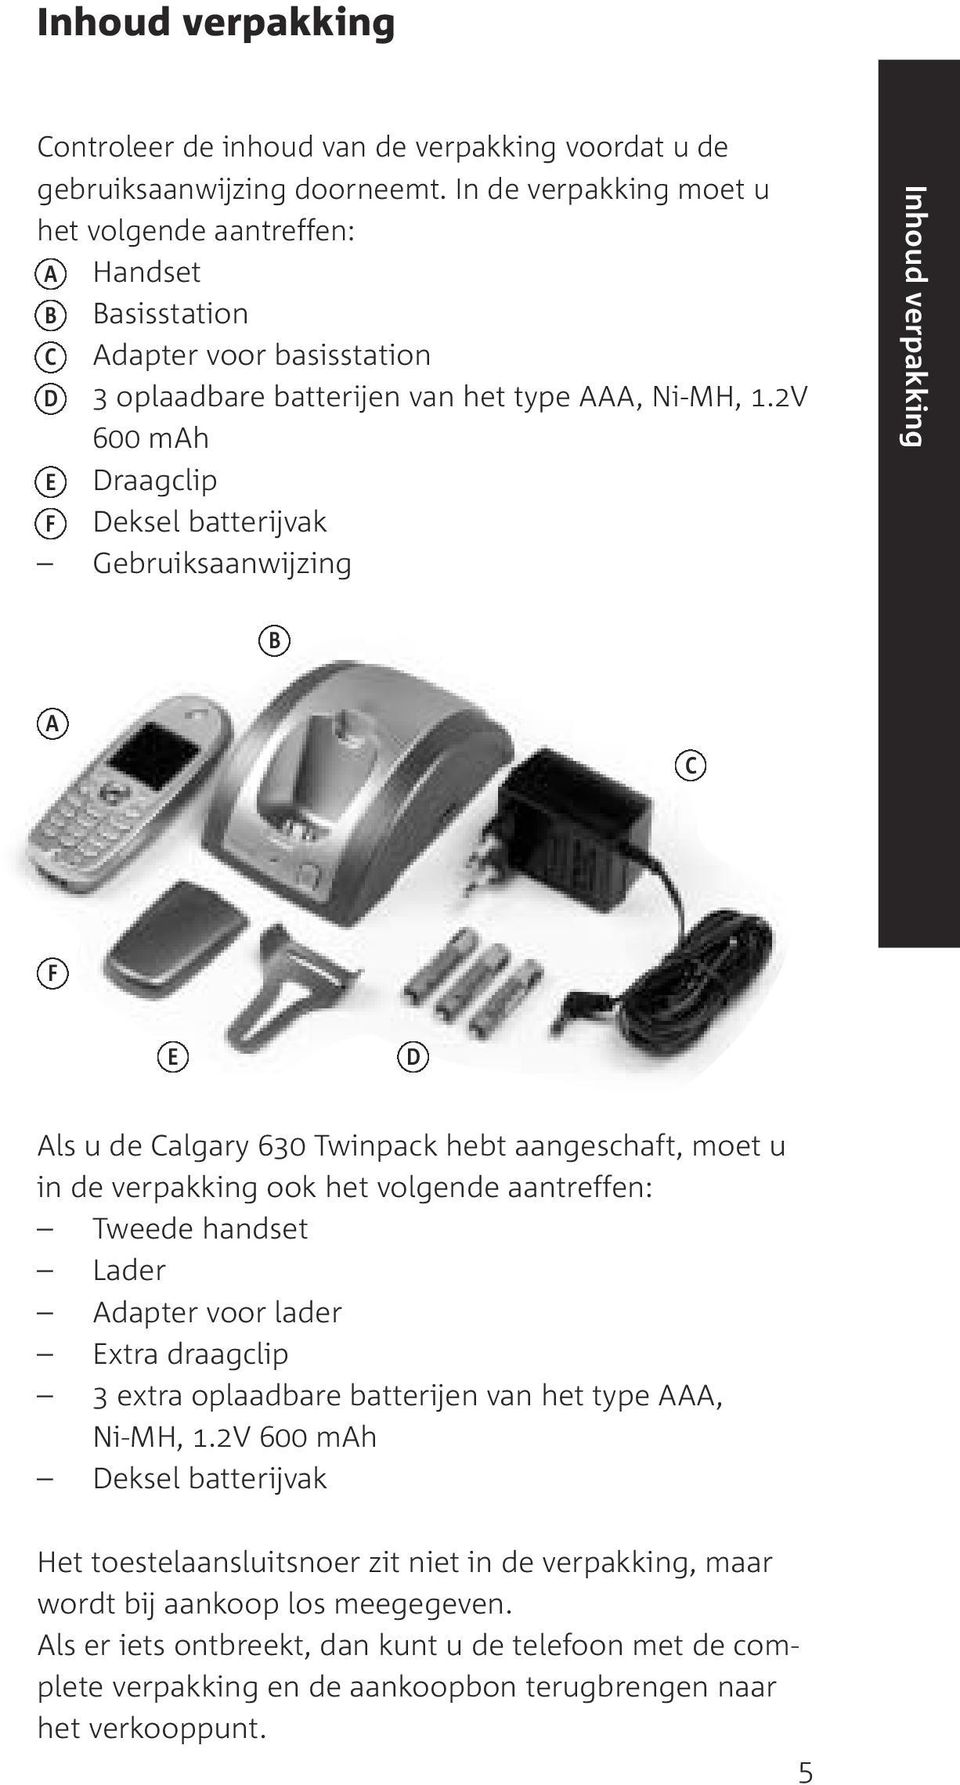 2V 600 mah E Draagclip F Deksel batterijvak Gebruiksaanwijzing Inhoud verpakking B A C F E D Als u de Calgary 630 Twinpack hebt aangeschaft, moet u in de verpakking ook het volgende aantreffen: